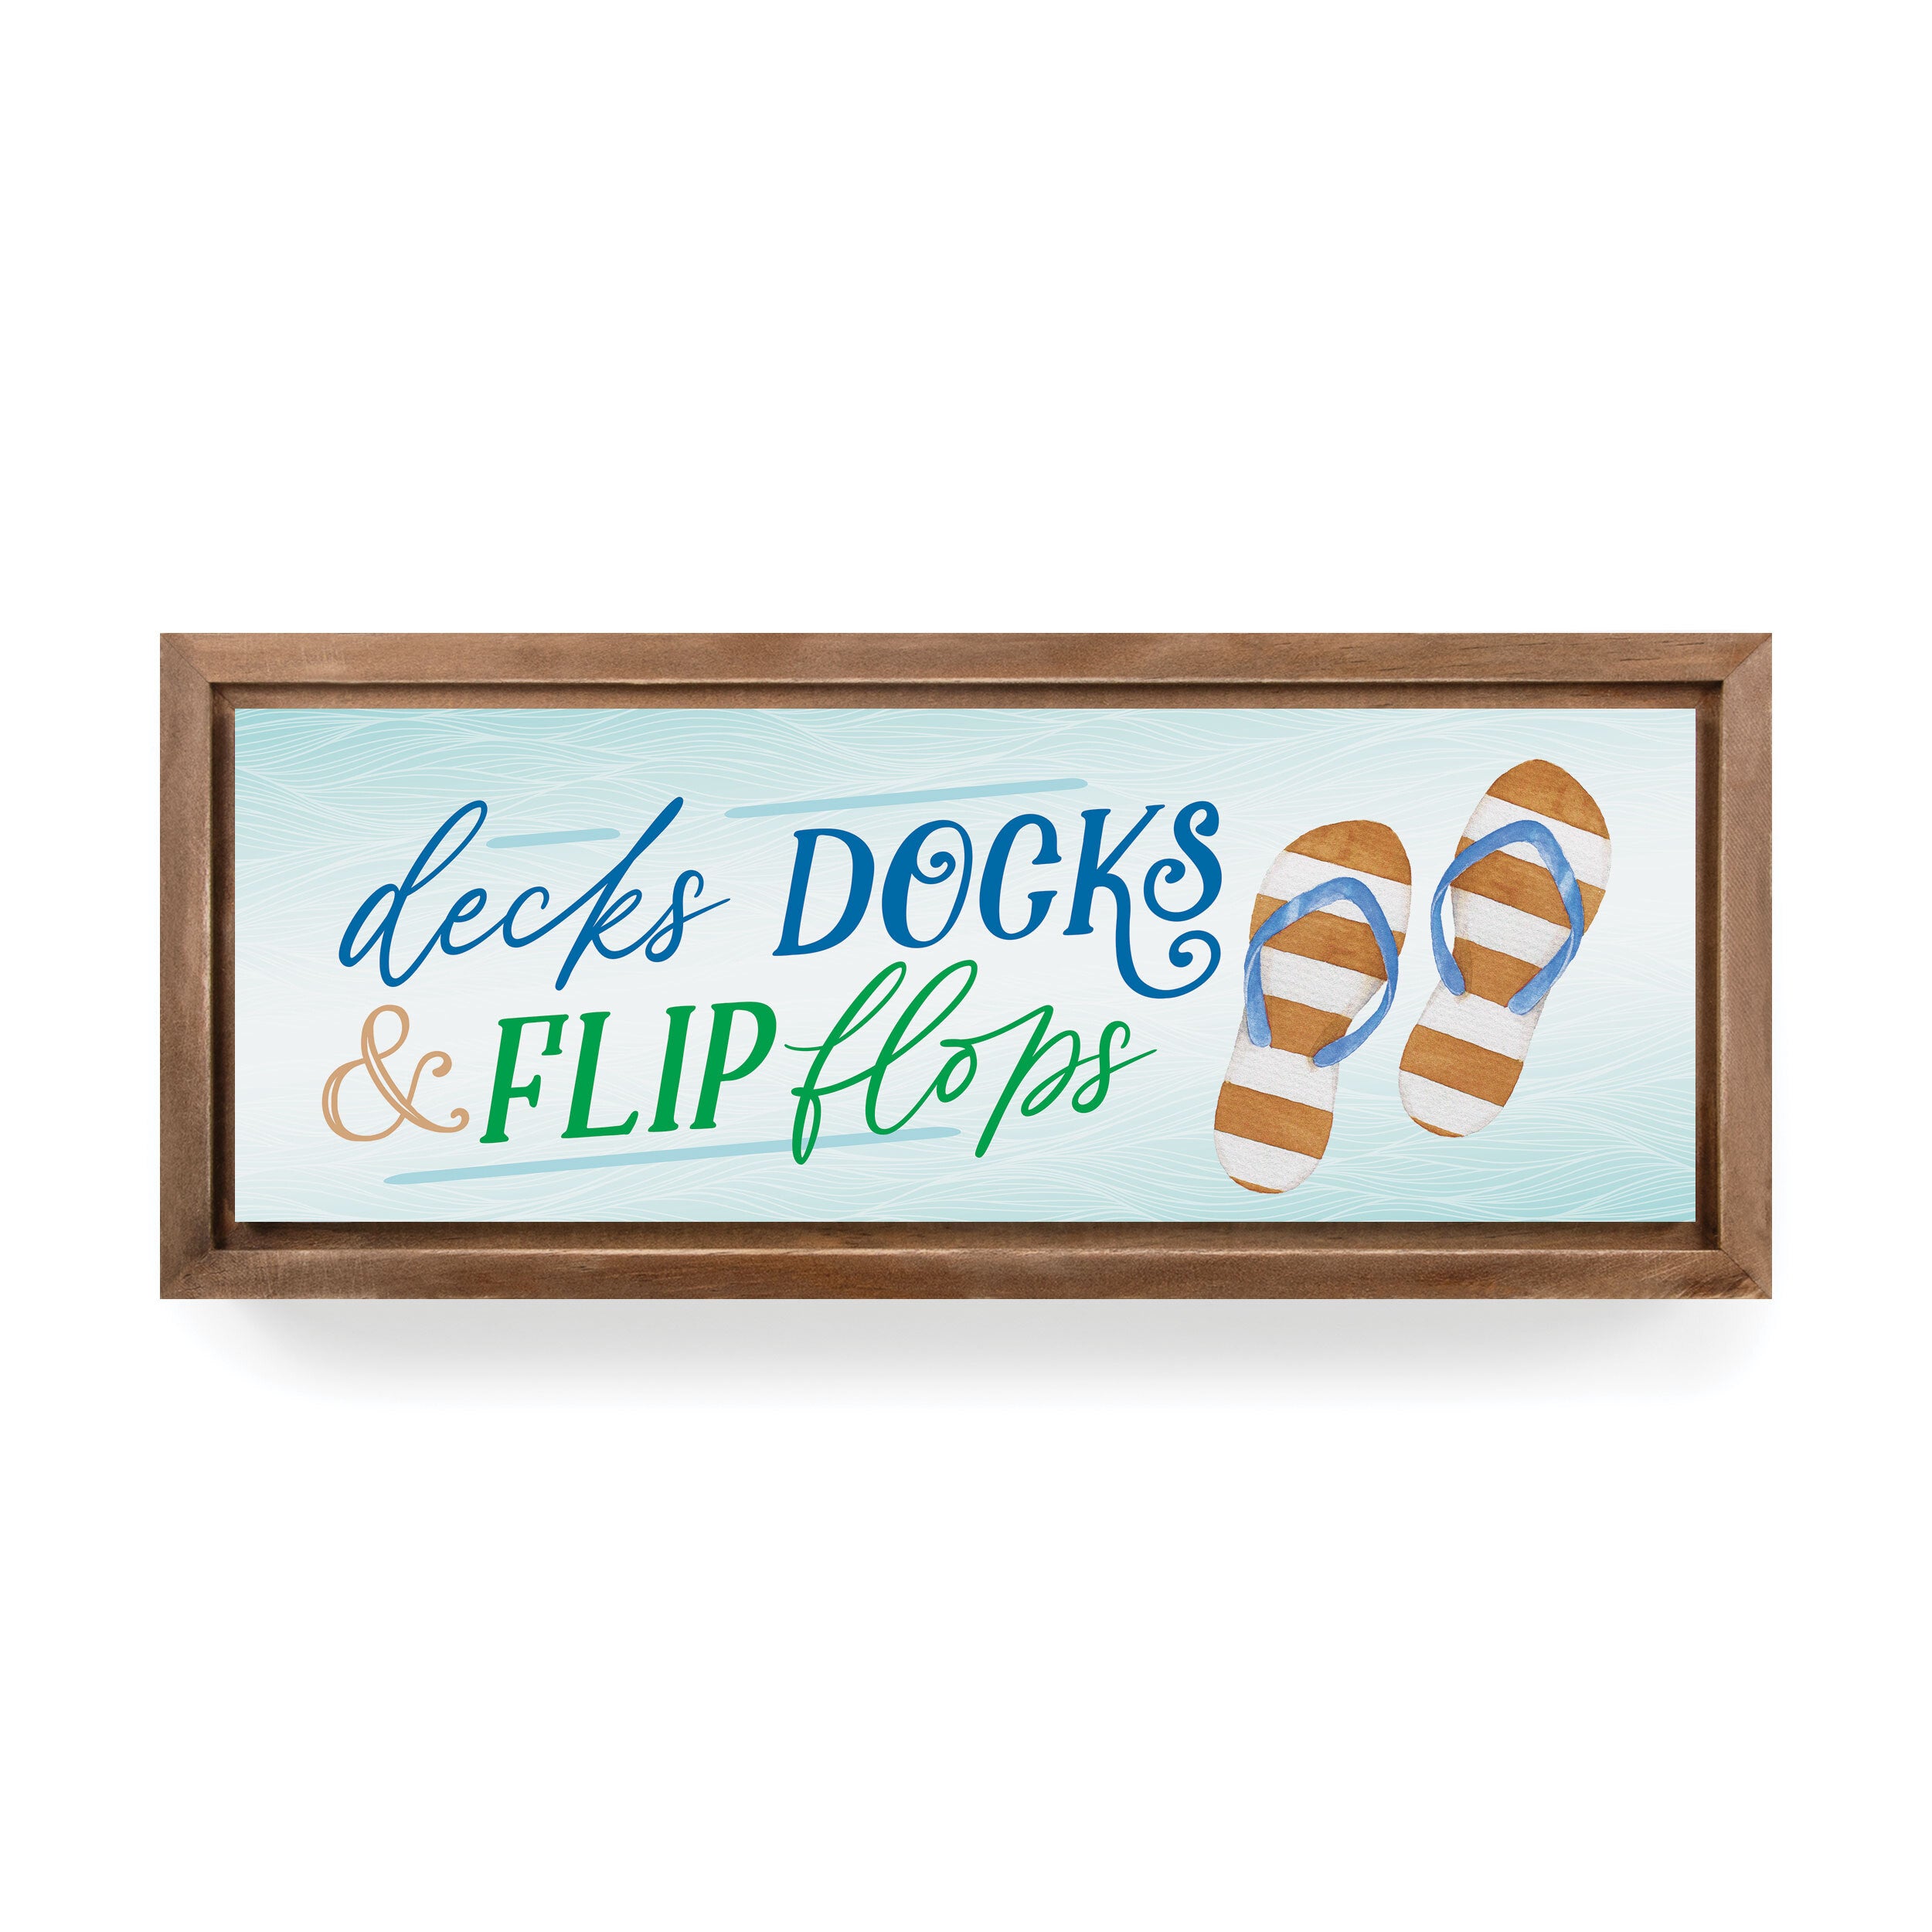 Decks, Docks & Flip Flops Framed Art